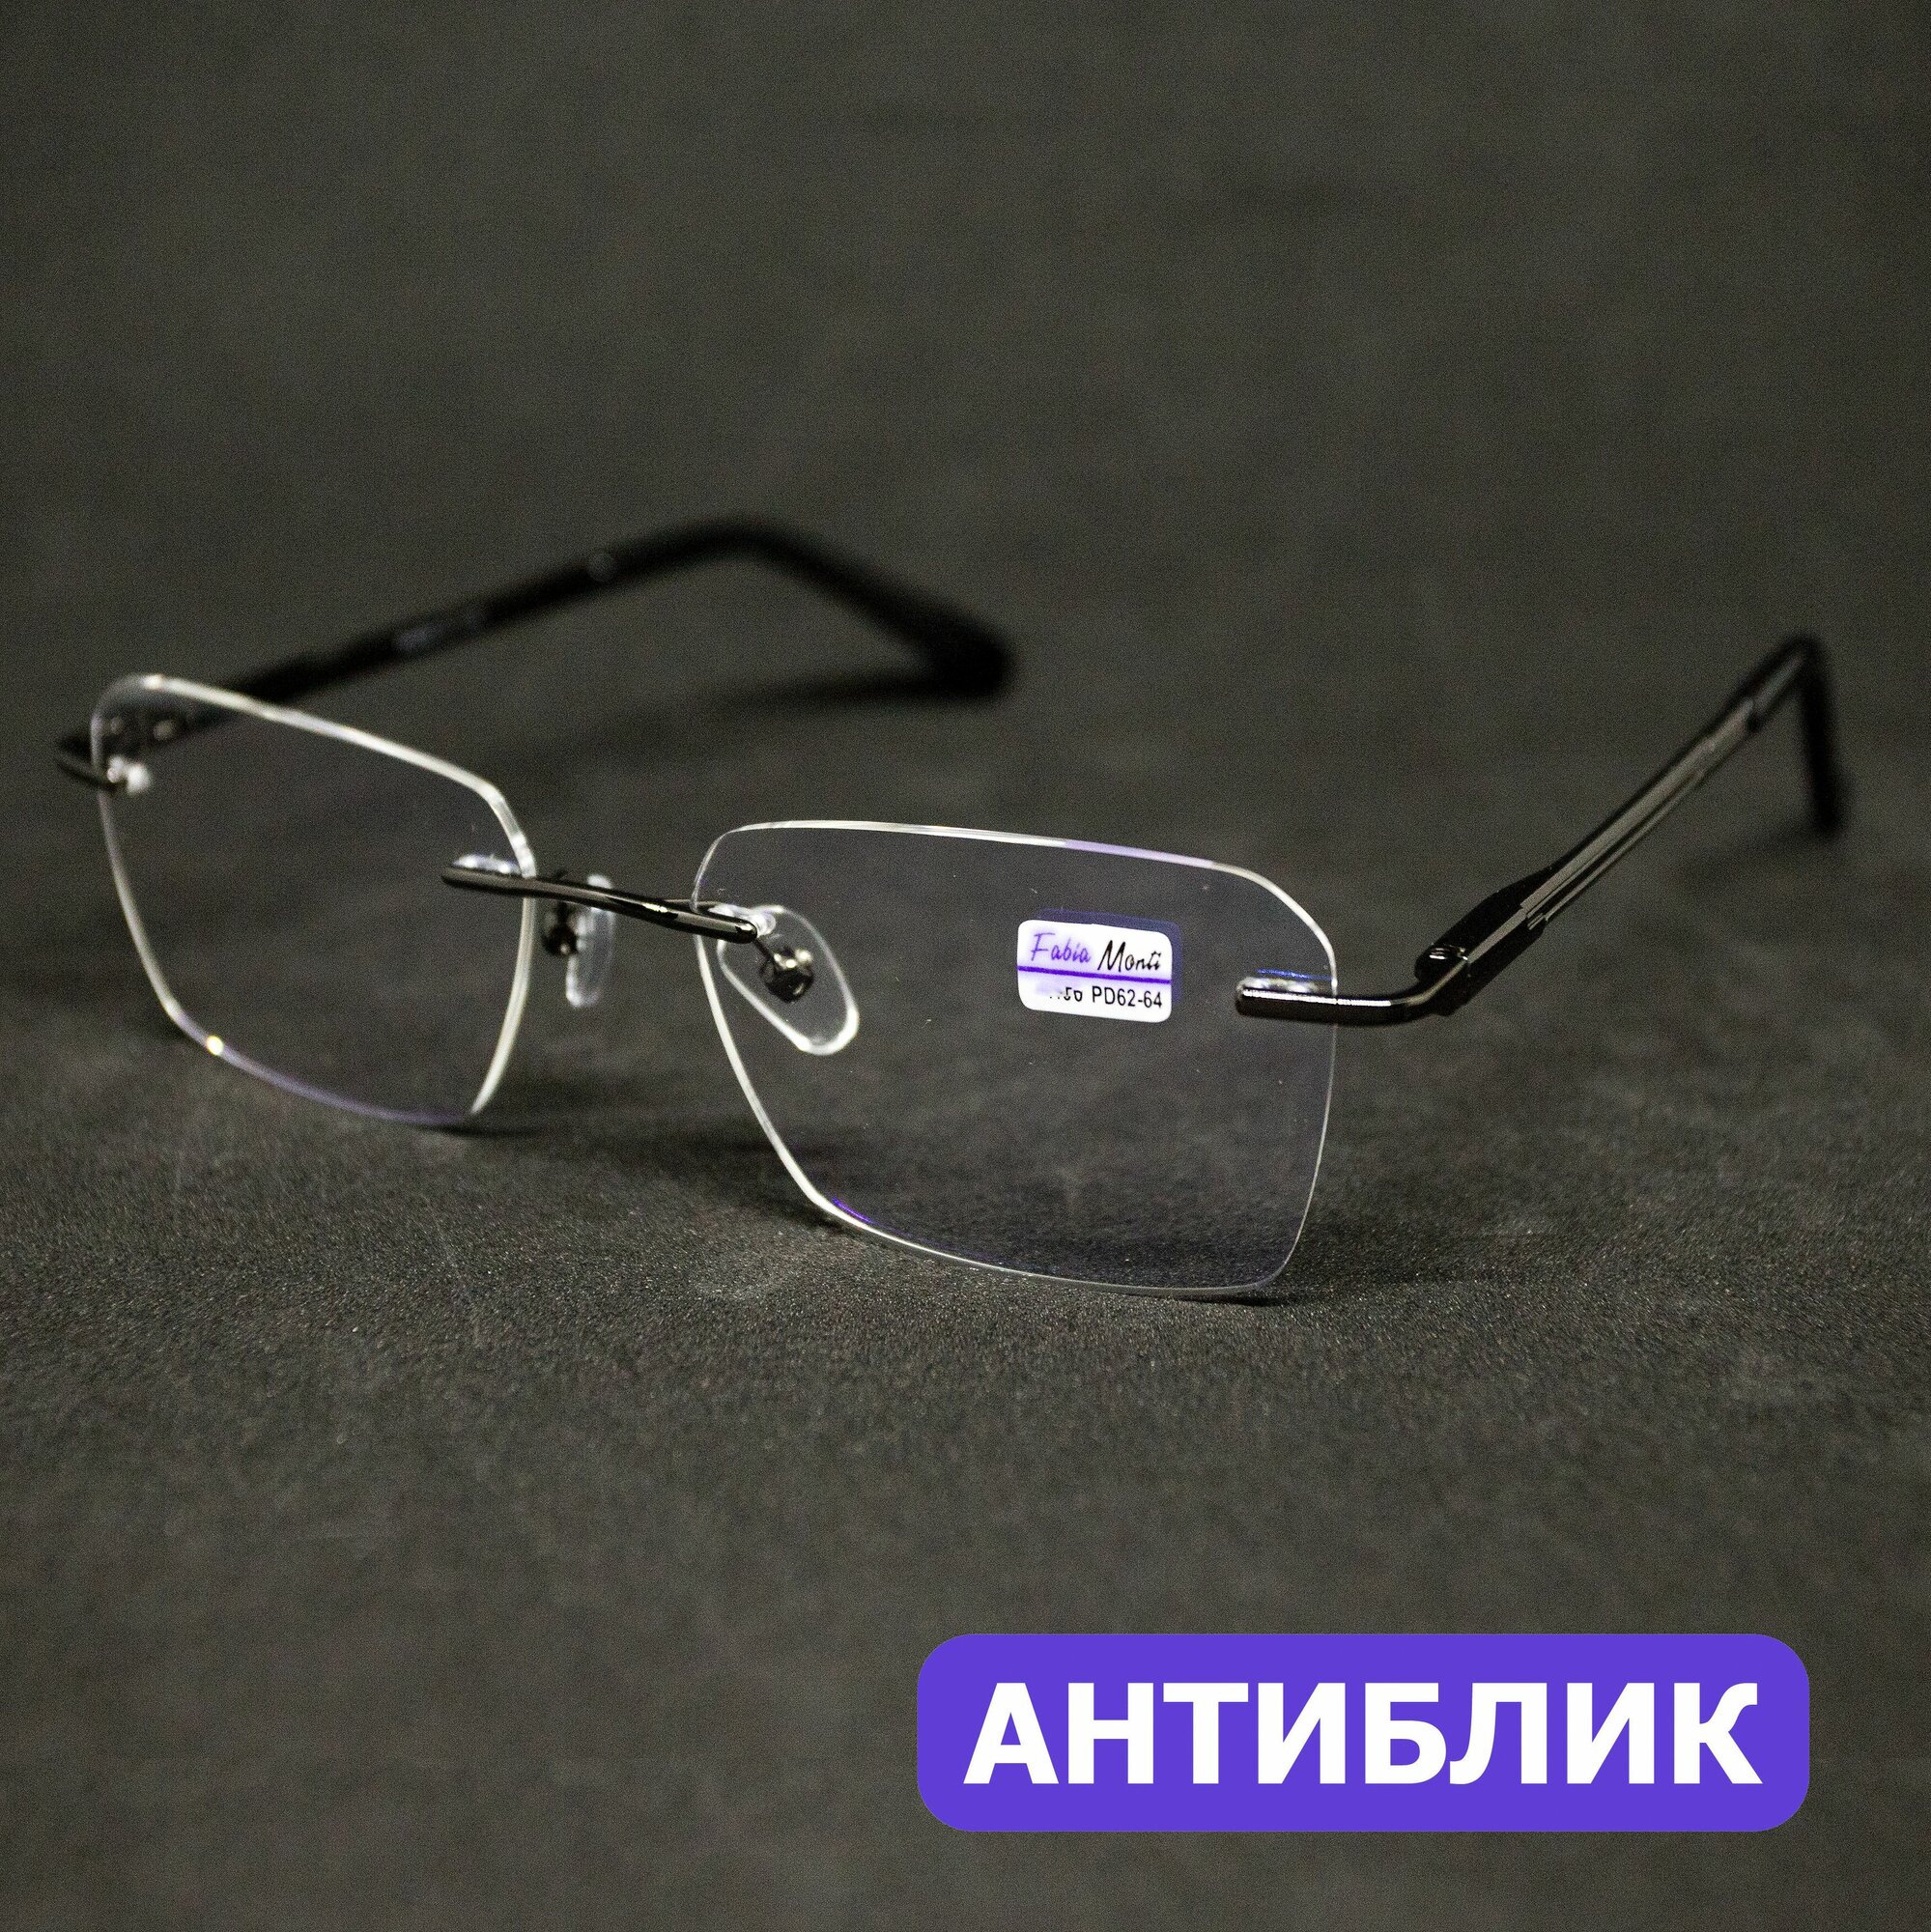 Безободковые очки покрытие антиблик с диоптрией (+2.00) Fabia Monti 8960 C3, линзы антиблик, цвет серый, РЦ 62-64